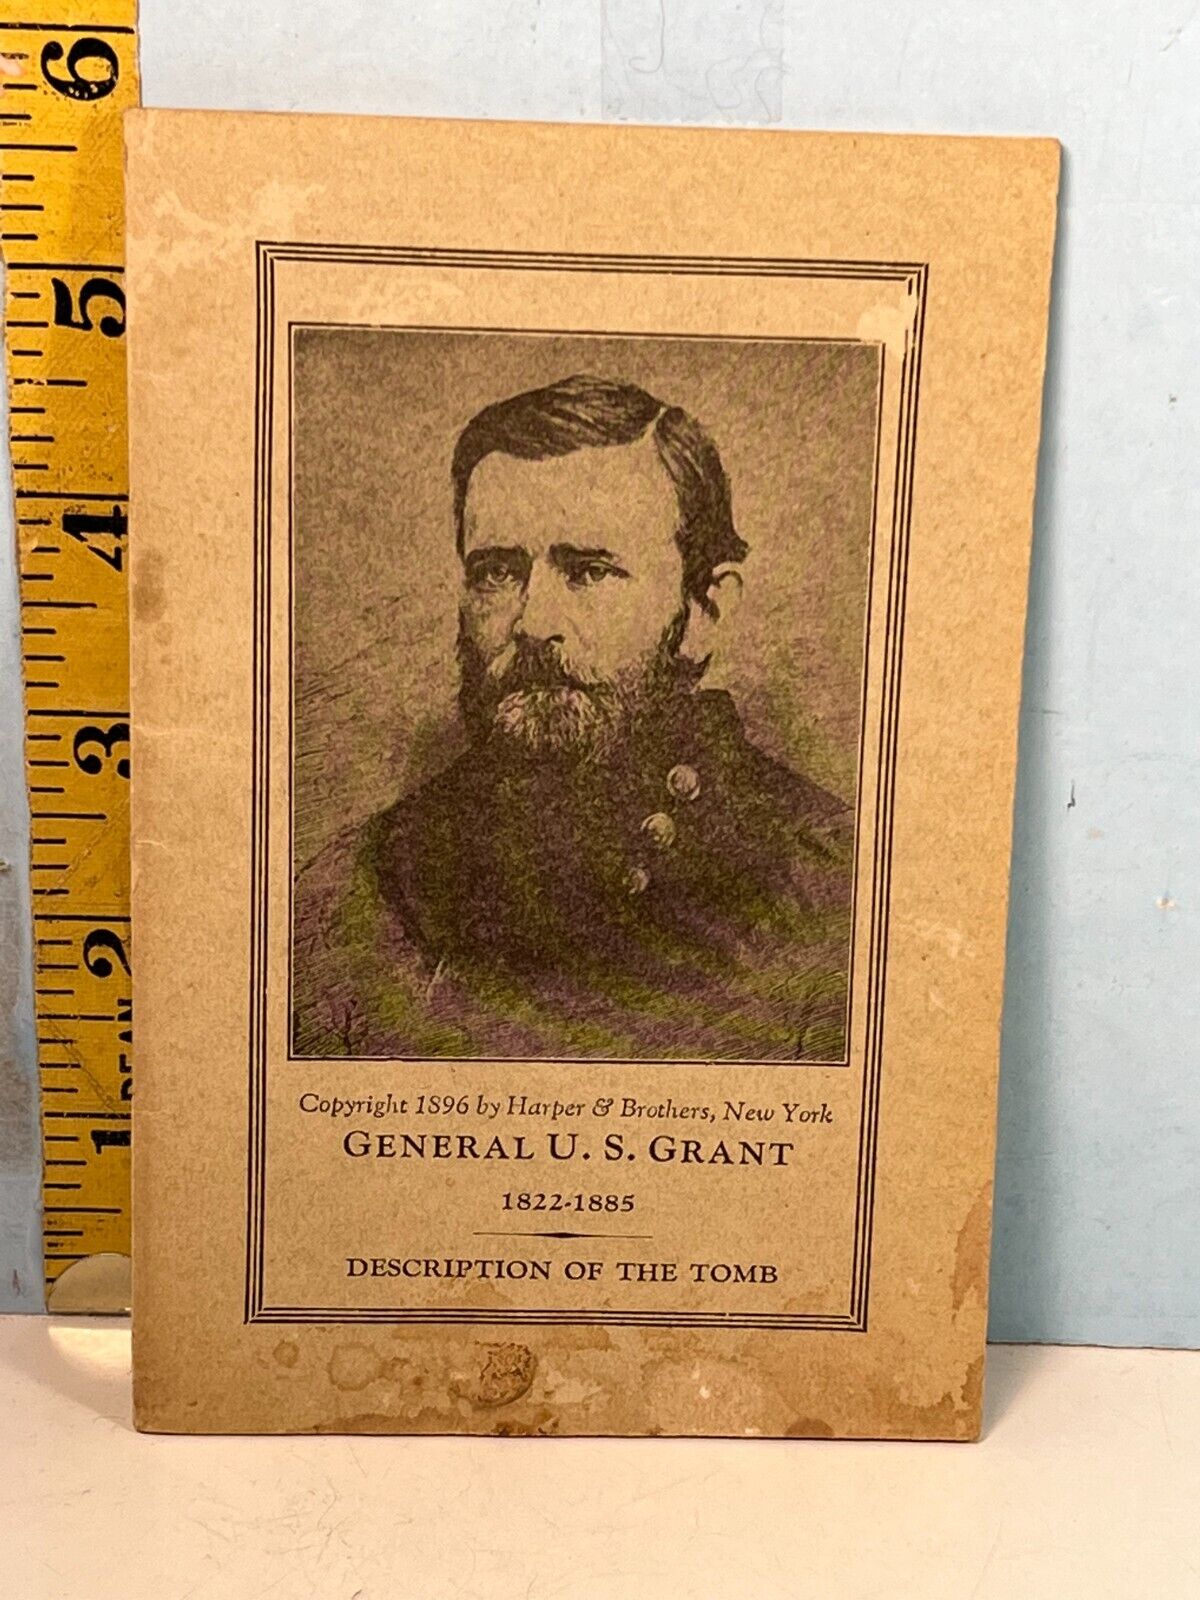 1928 General U.S. Grant Description of The Tomb -Souvenir booklet